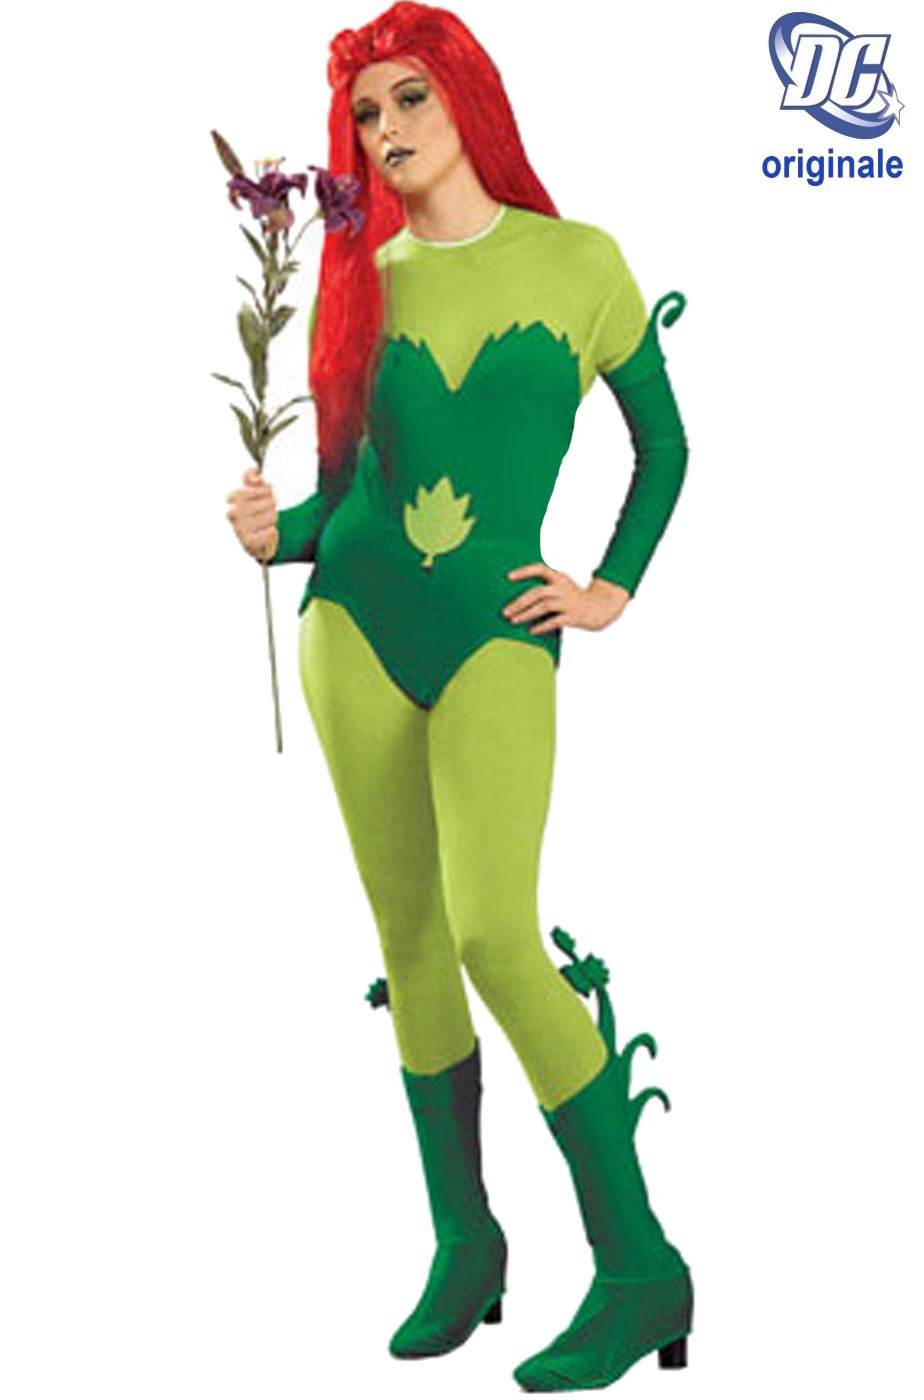 Costume di Poison Ivy originale DC Comics versione cartoon con tuta